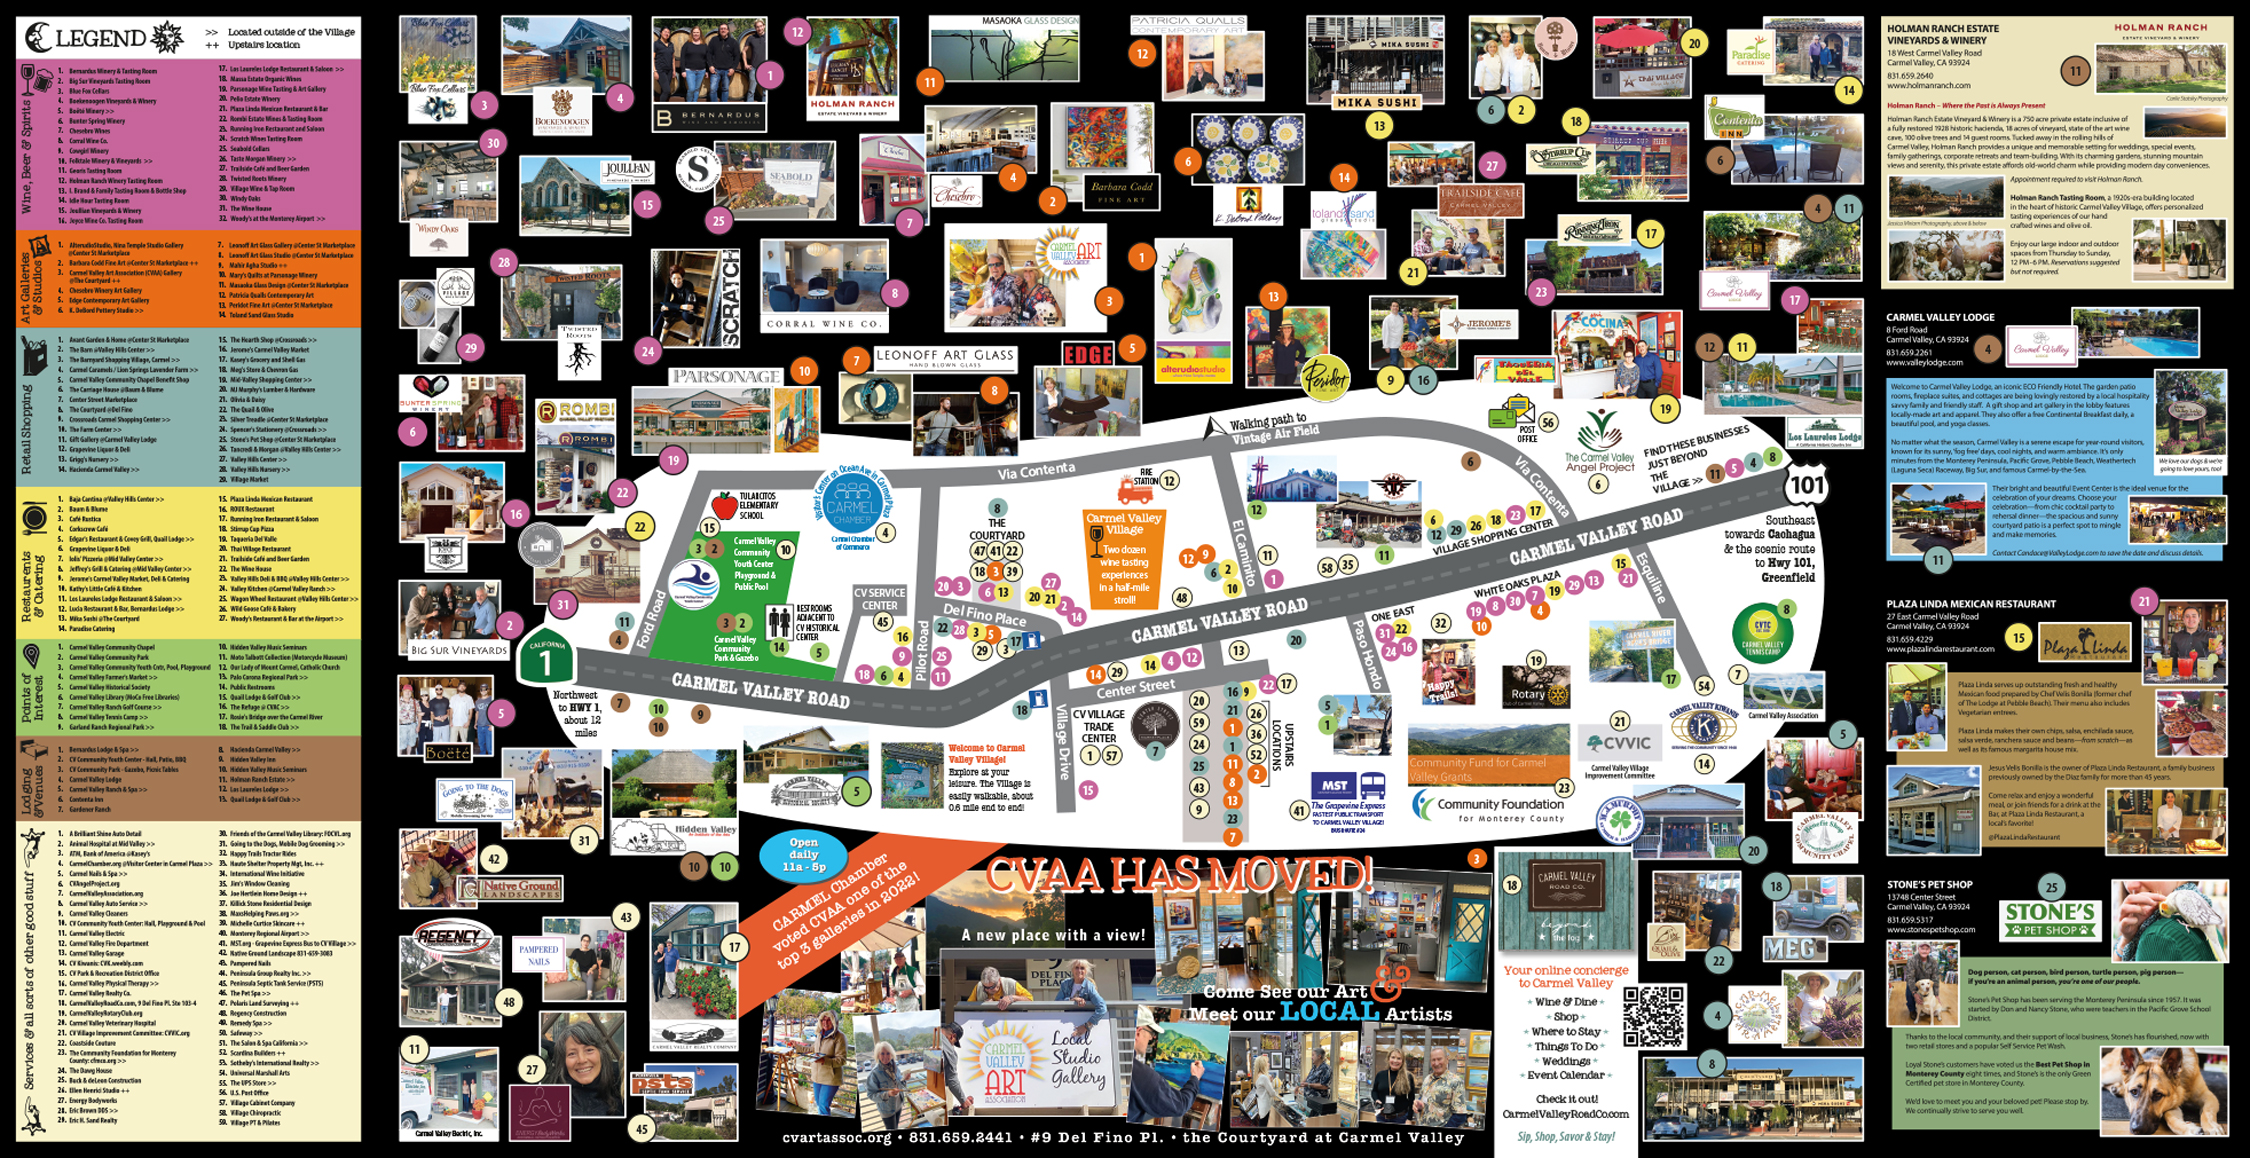 Carmel Valley Road & Village Map 2022 INSIDE